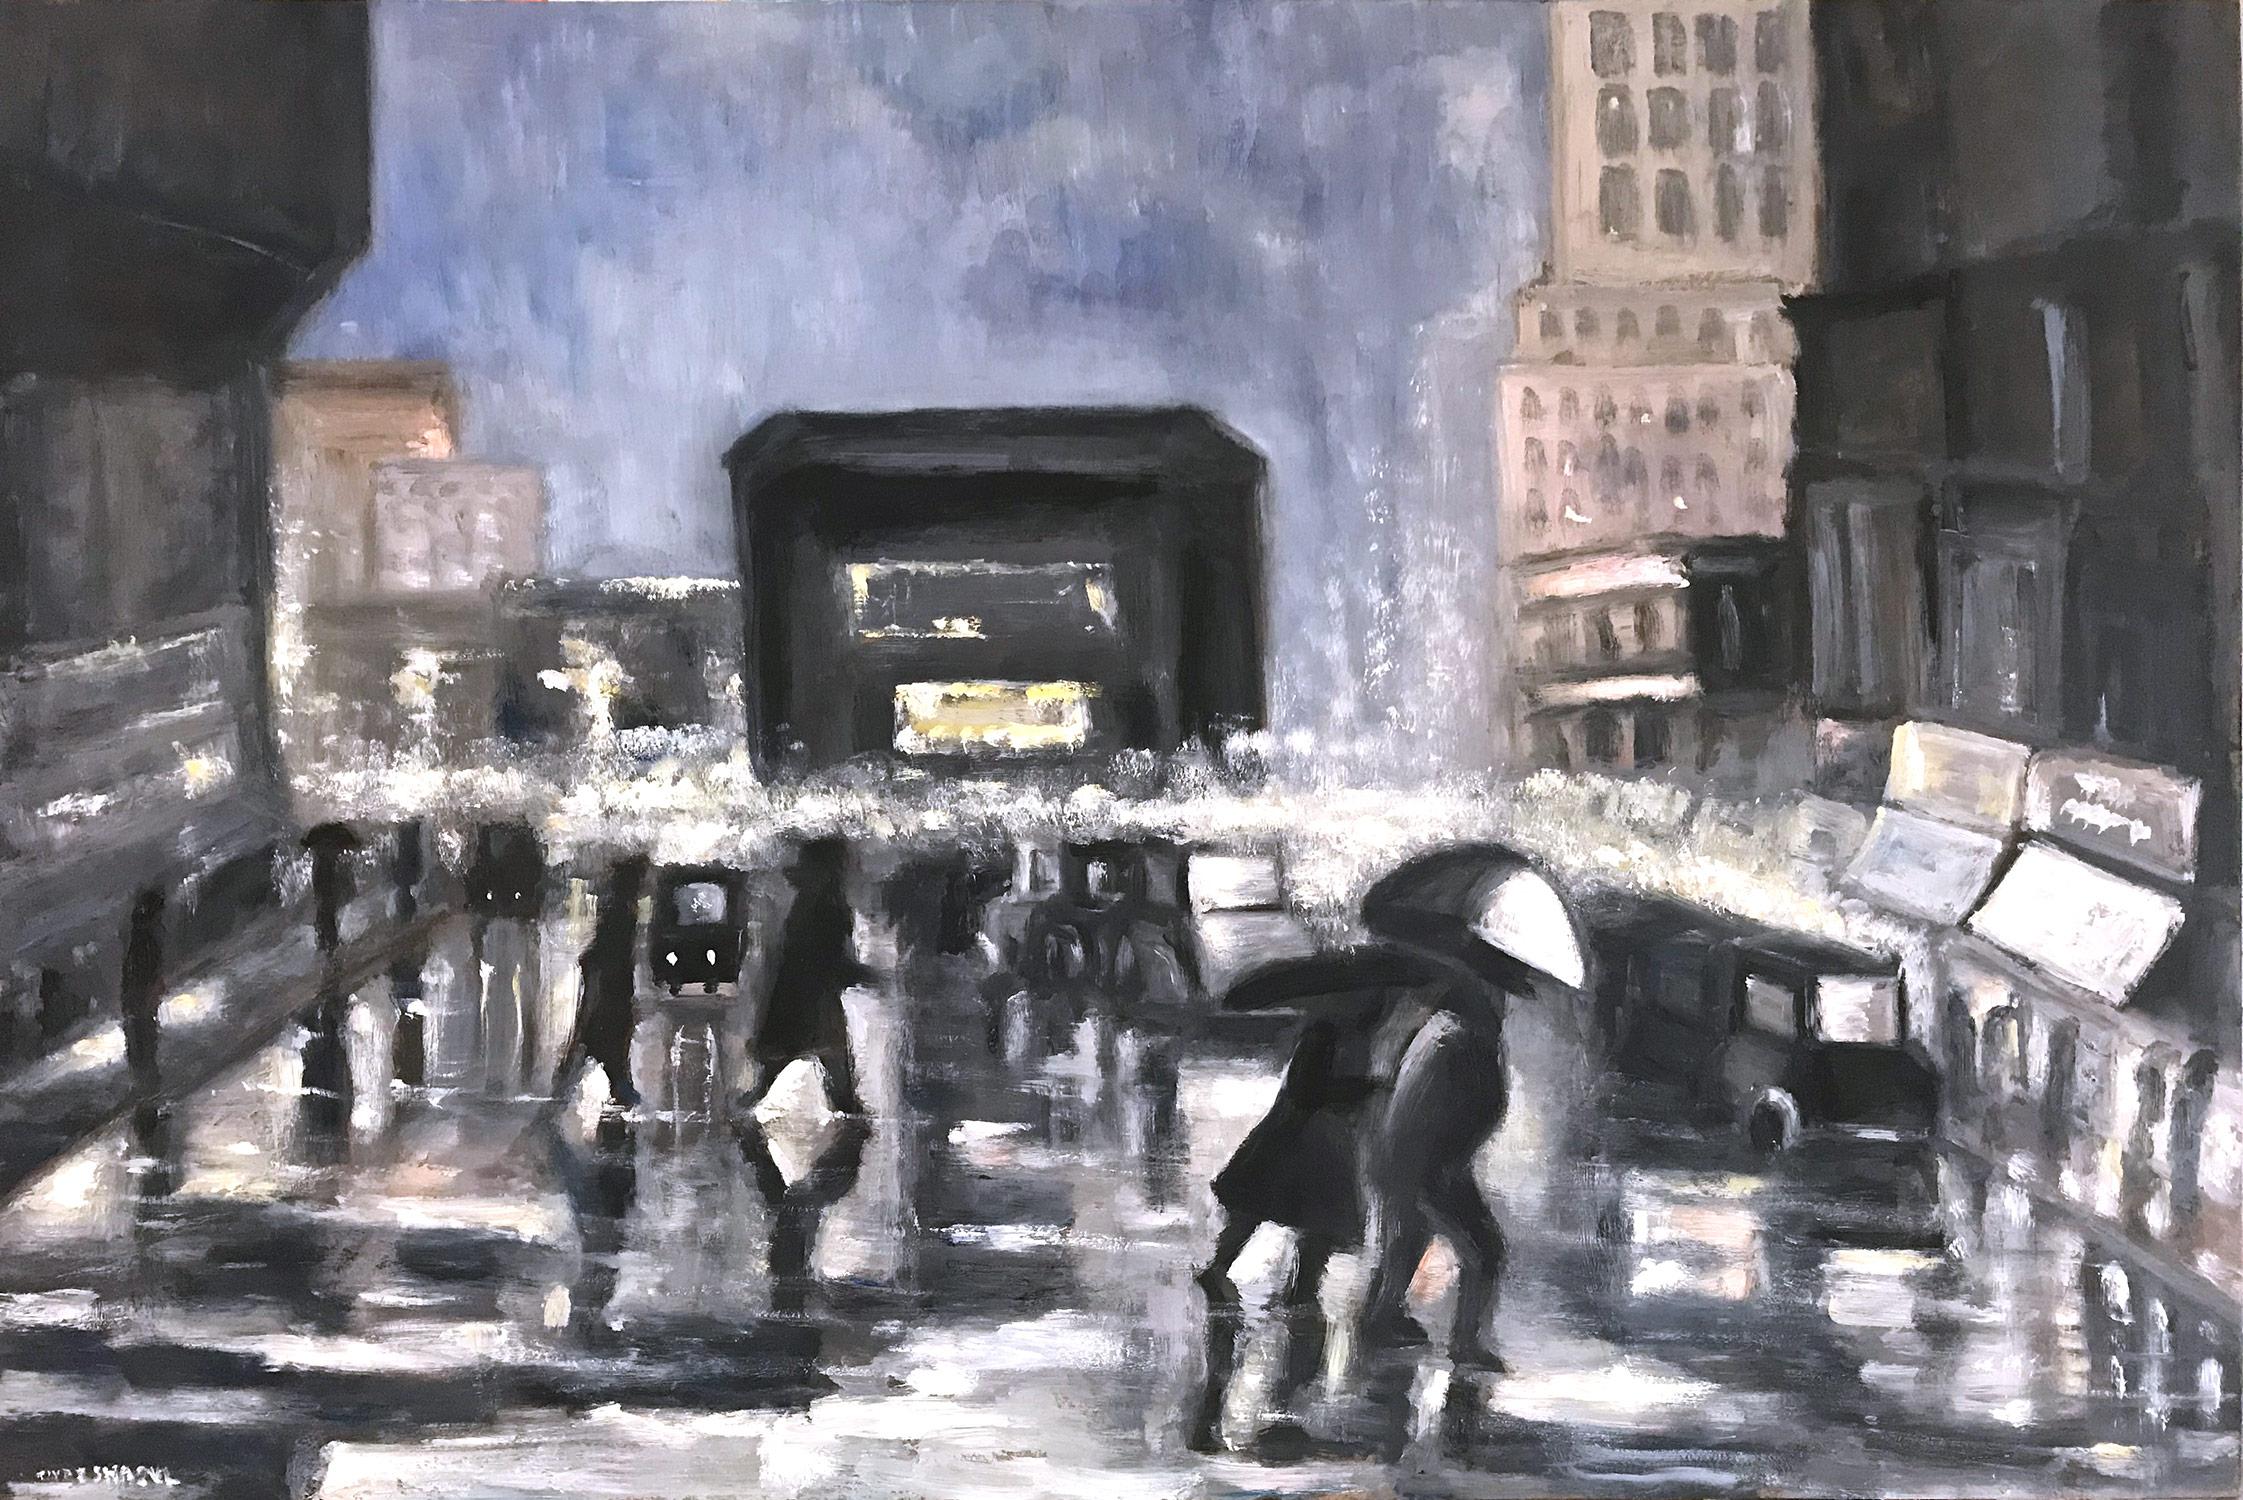 Landscape Painting Cindy Shaoul - « Rain in Downtown New York » - Scène de rue impressionniste de style Ashcan School